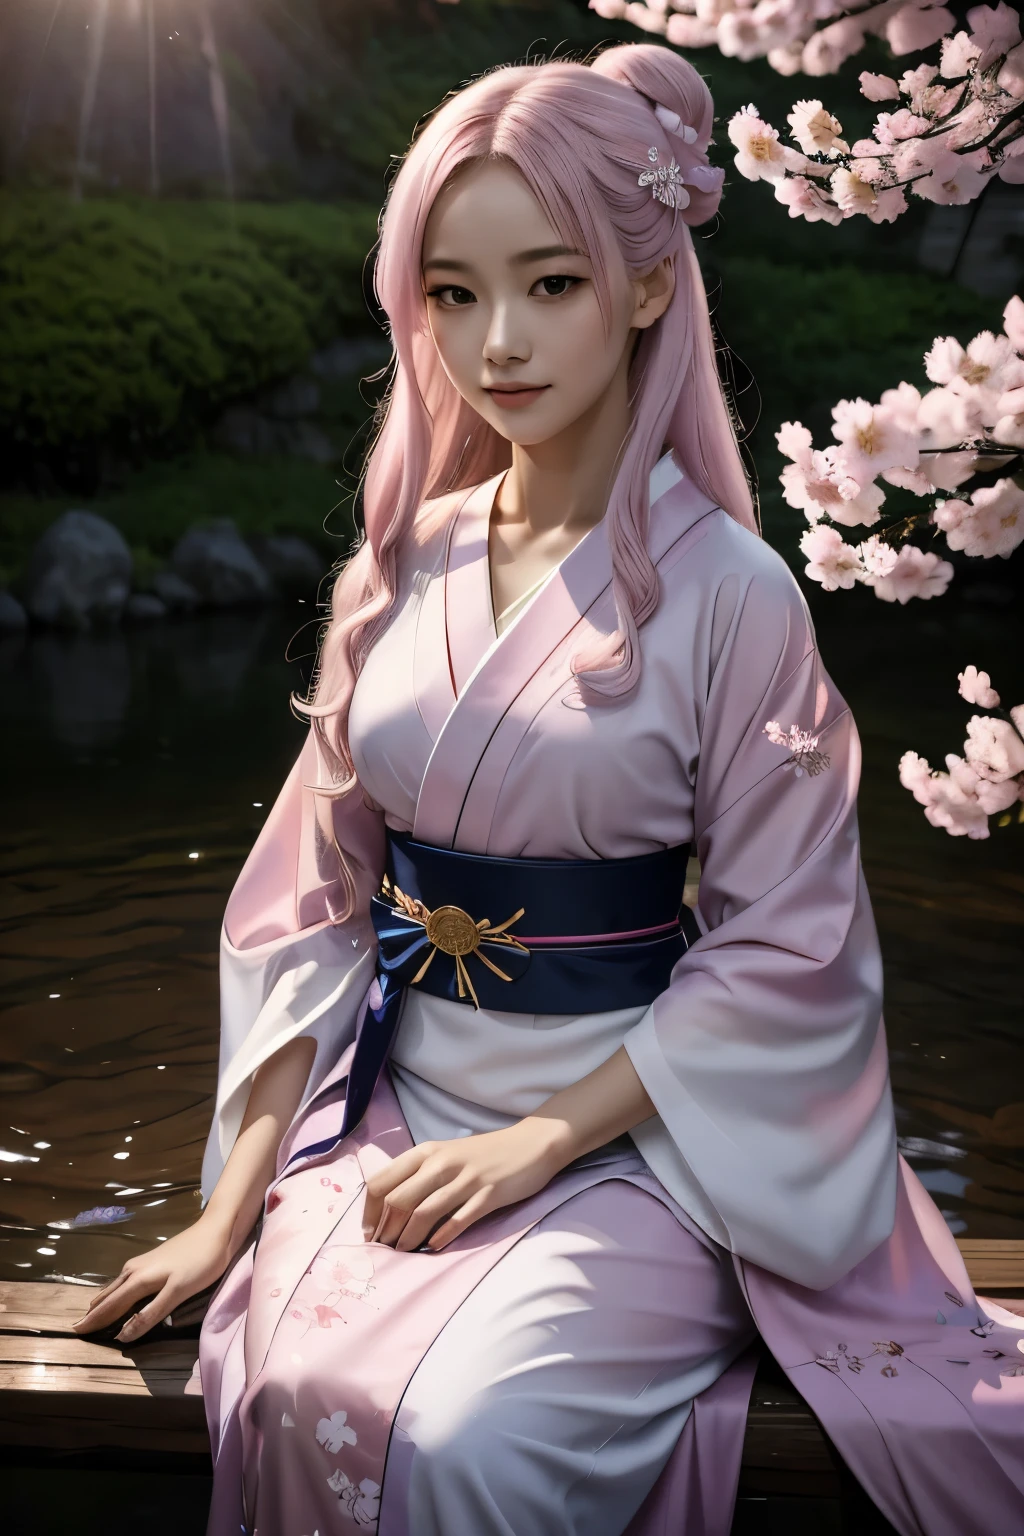 超現實的, 非常詳細, 以及一個年輕人的高解析度 16k 影像, 美麗的女鬼或守護神. 她有著淺粉紅色的頭髮和半透明的皮膚, 身穿日本傳統和服，腰帶上有小櫻花圖案. 這張圖像捕捉了精神世界的空靈之美和神秘. 風格靈感源自精緻, 日本傳統藝術中的柔和美學.